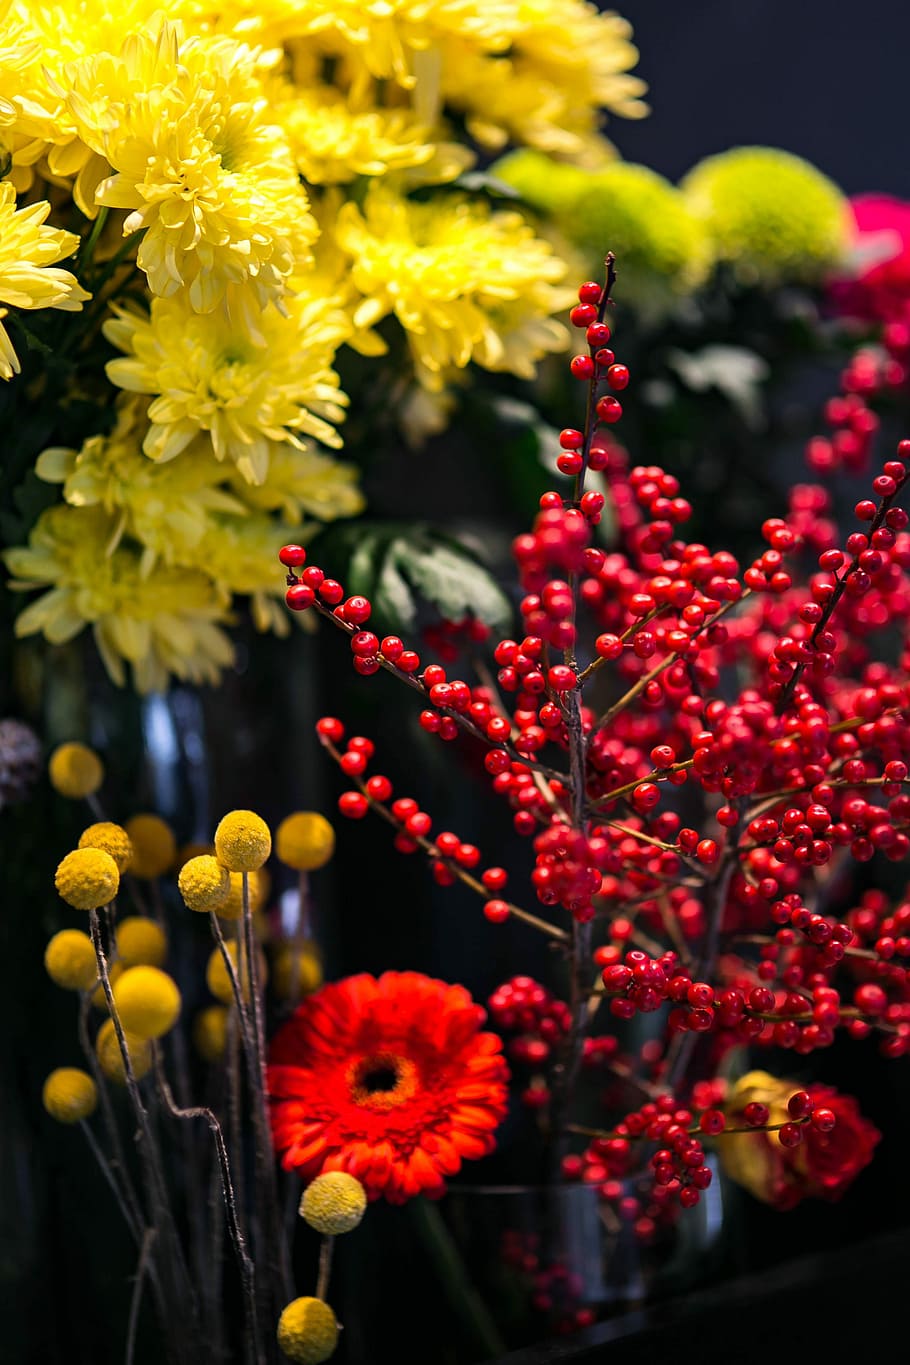 vermelho, rowan, arranjo colorido, flores, colorido, arranjo, flora, amarelo, buquê, bonita